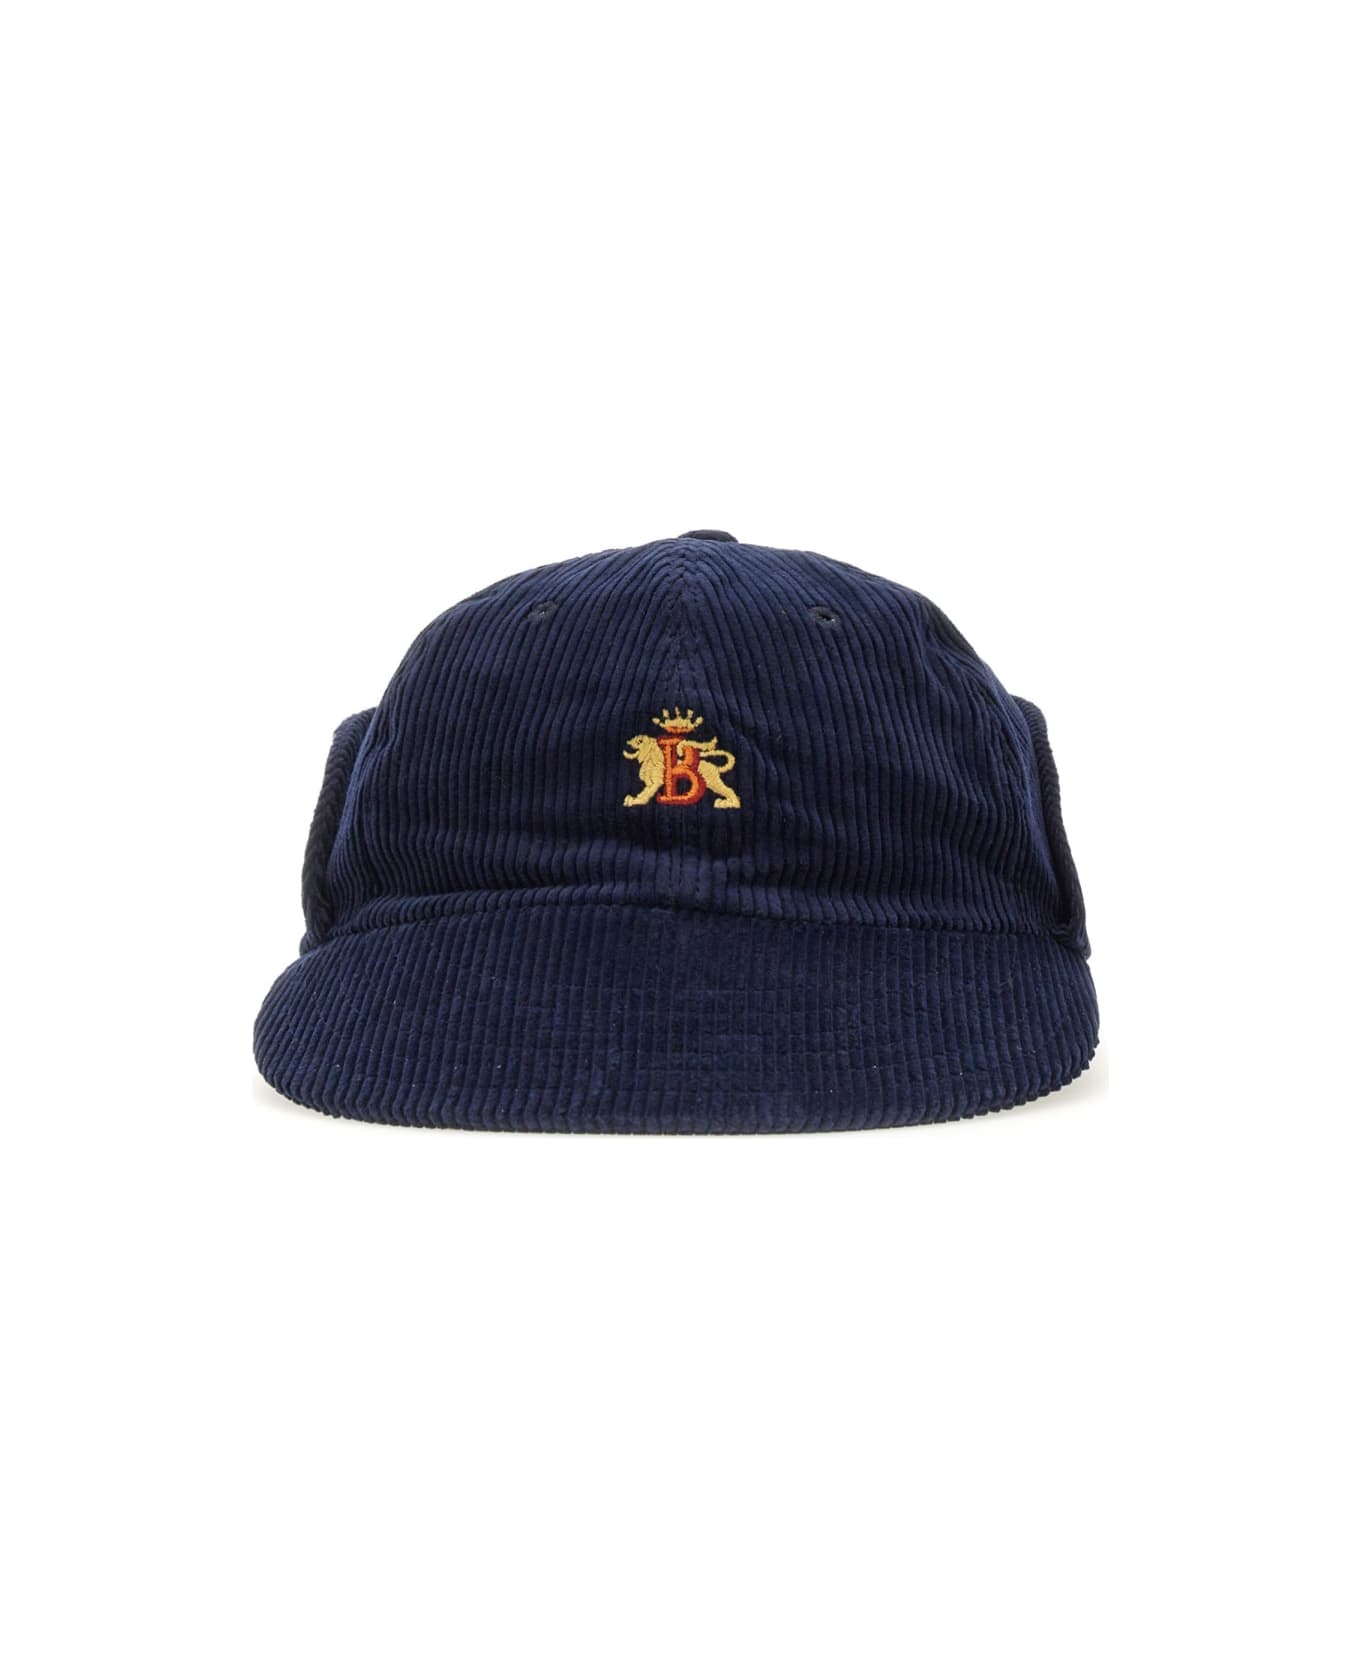 Baracuta Hat With Logo - BLUE 帽子